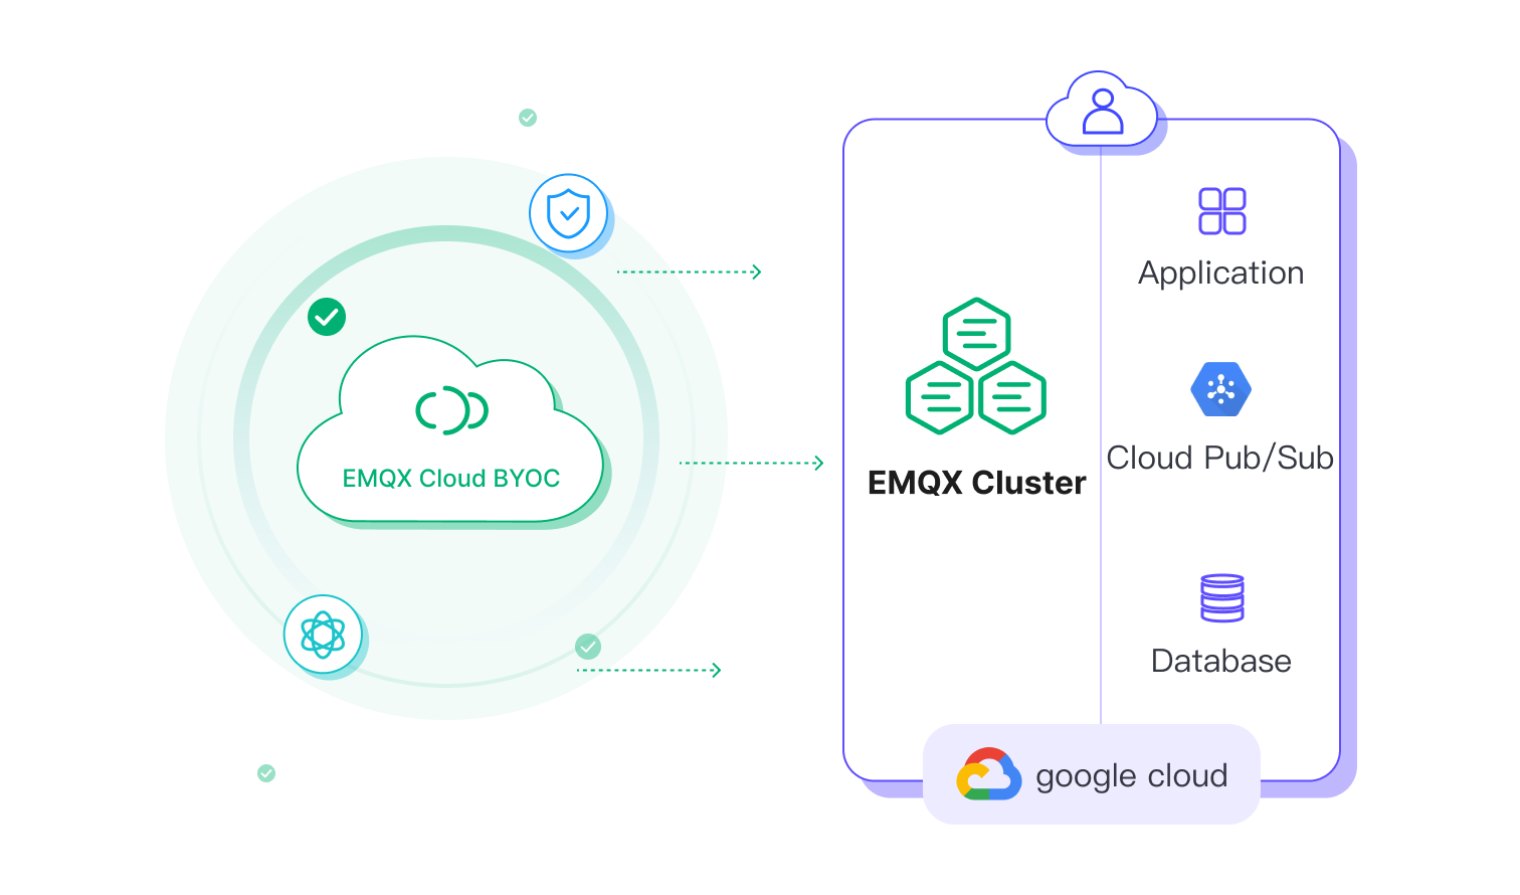 EMQX Cloud BYOC on Google Cloud